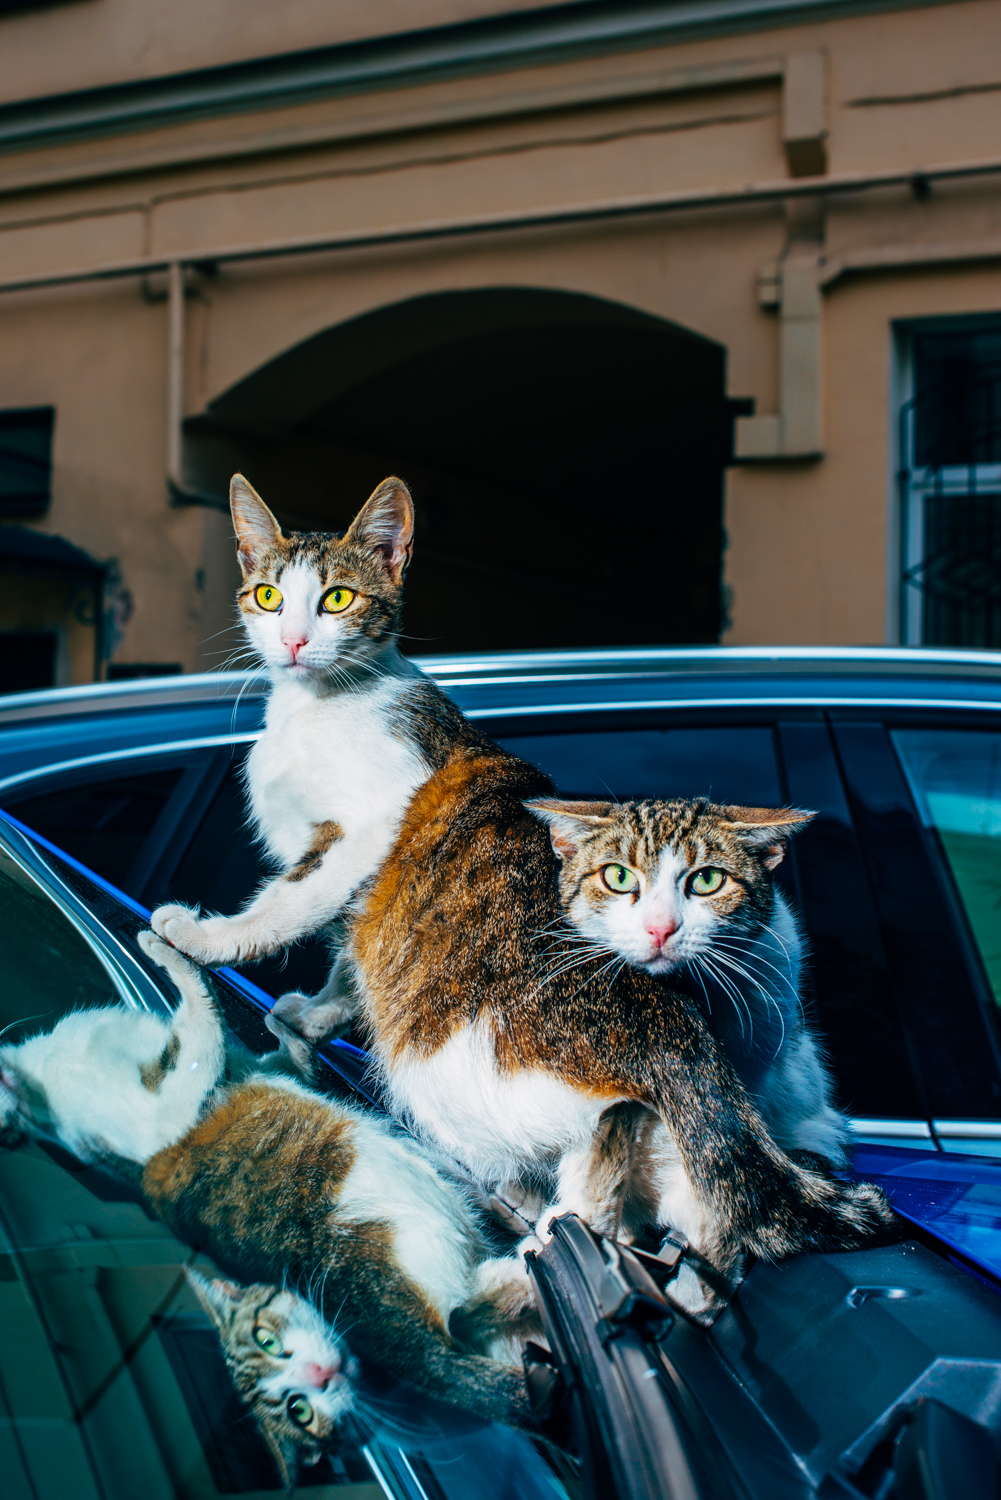 Hello street cat издевательство. Street Cat. Дворовый кот бандит. Envy Street Cats. Кот тоже личность.